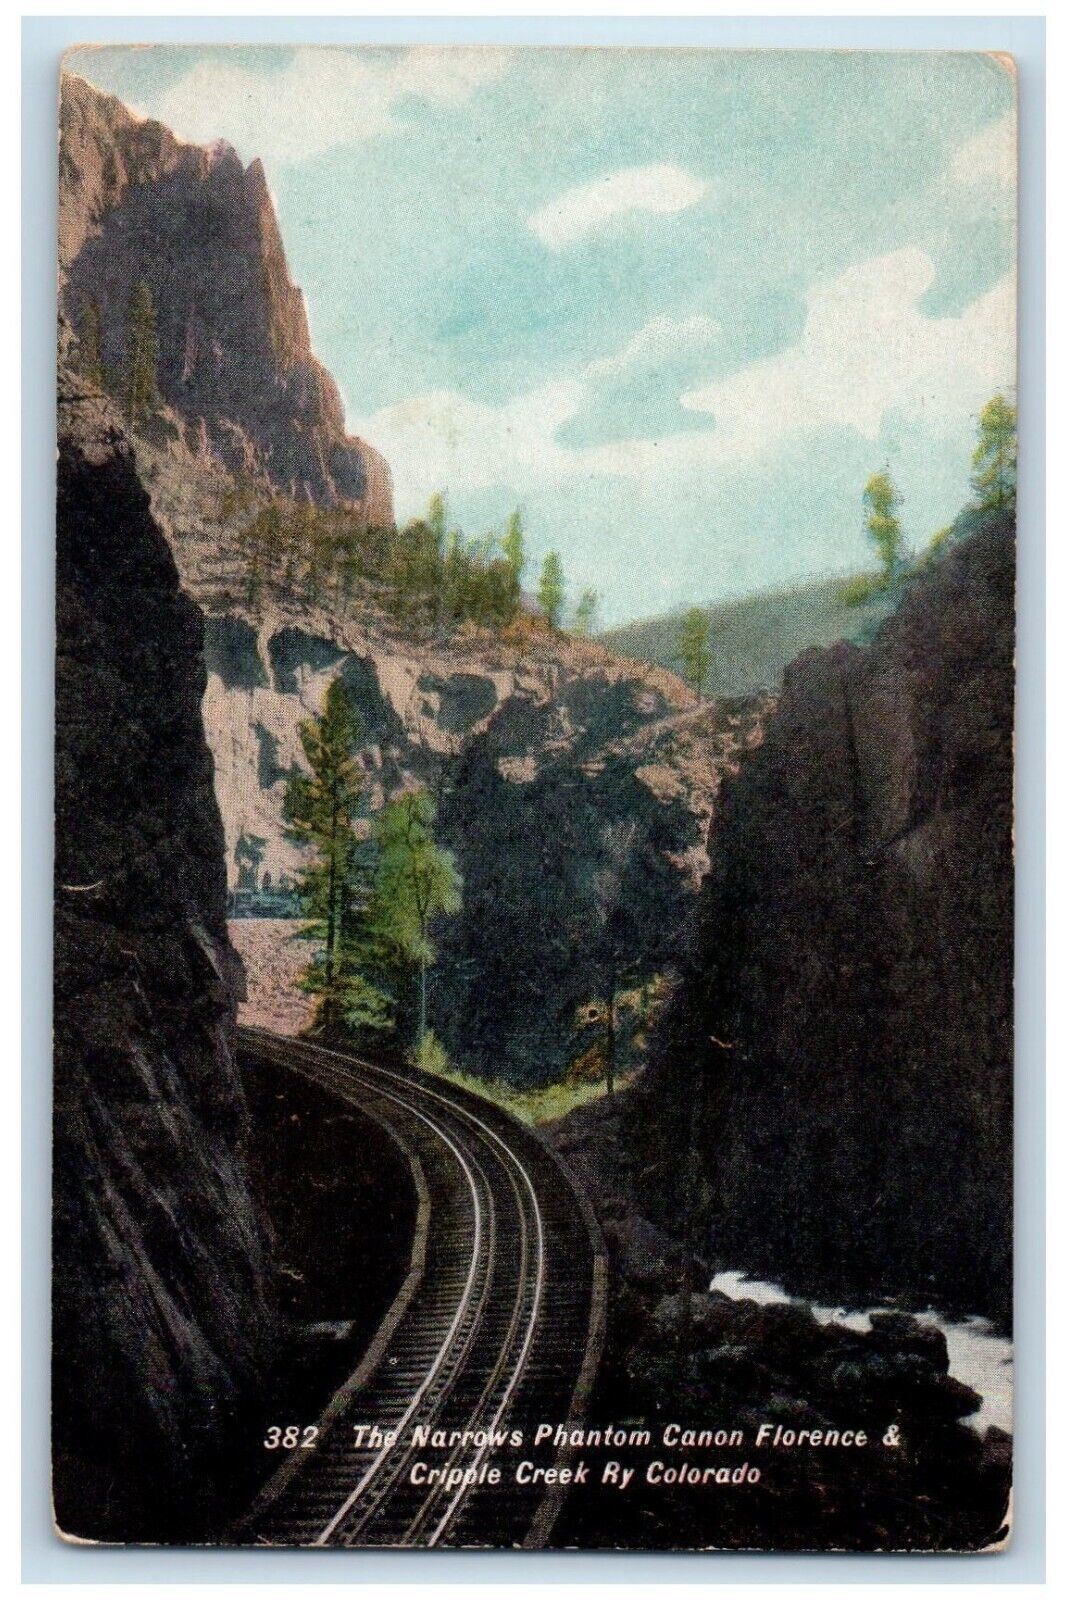 The Narrows Phantom Canon Florence & Cripple Creek Ry Colorado CO Postcard